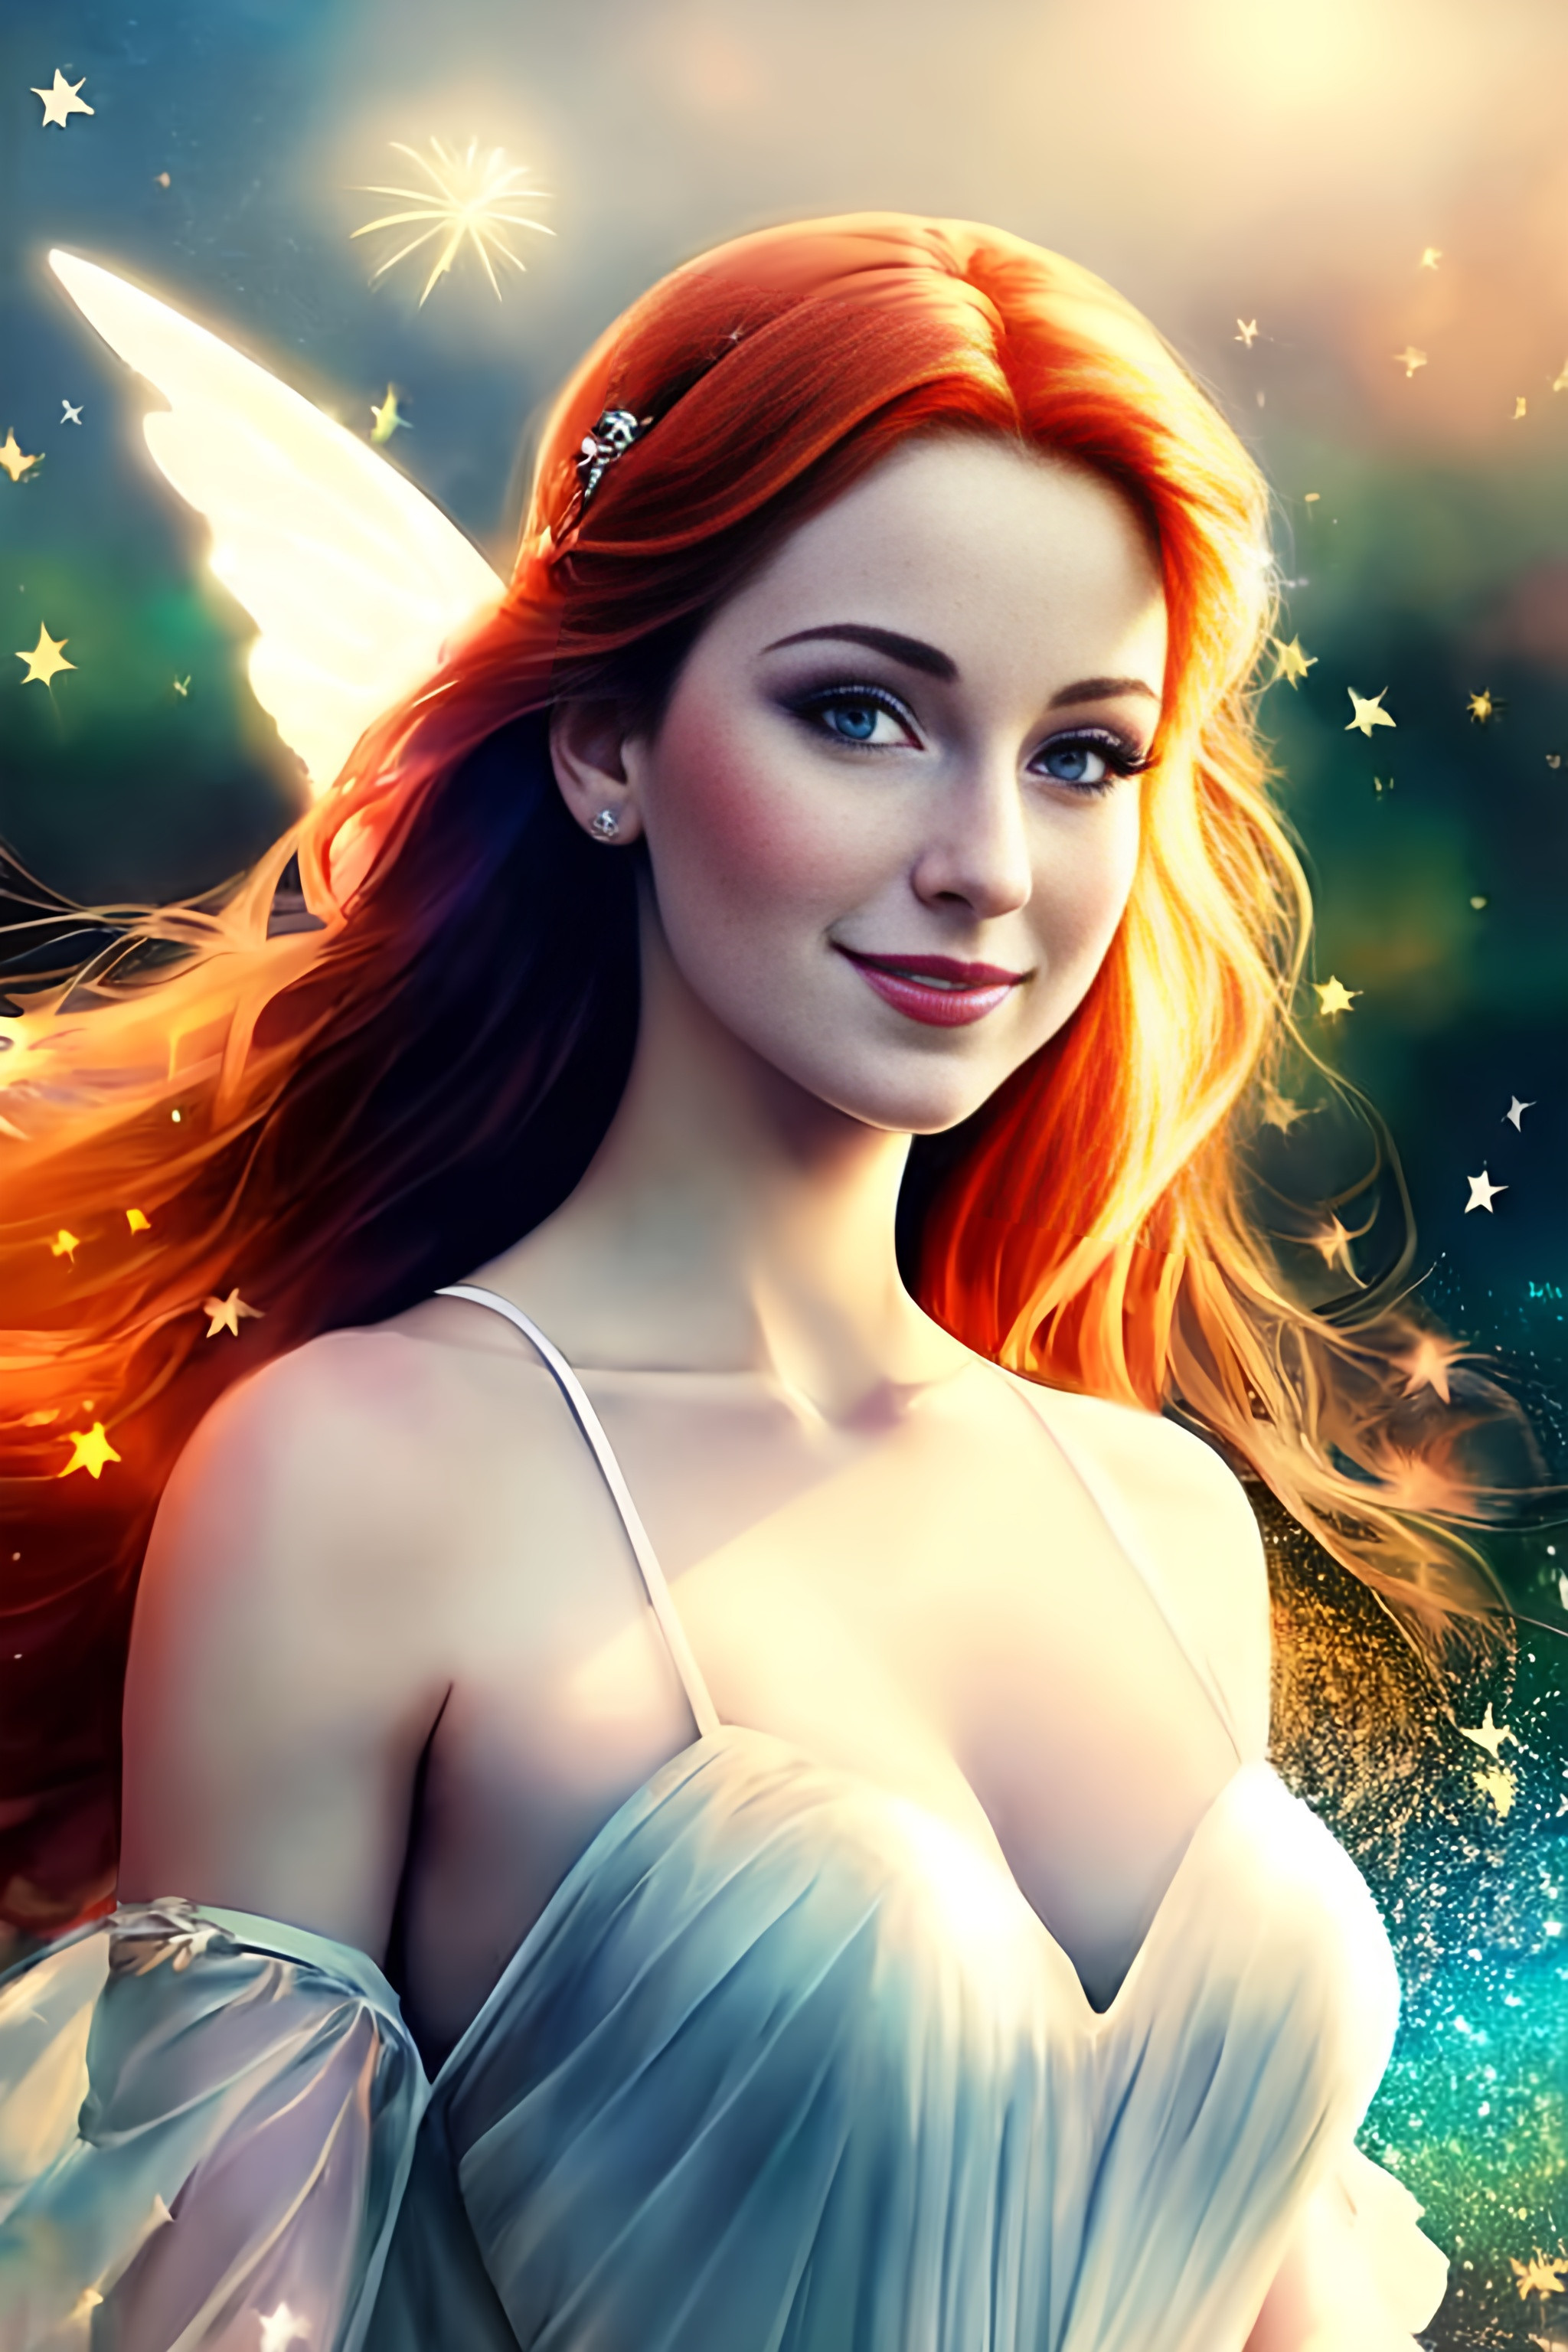 pale skinned , auburn fairy goddess with gossamer wi...